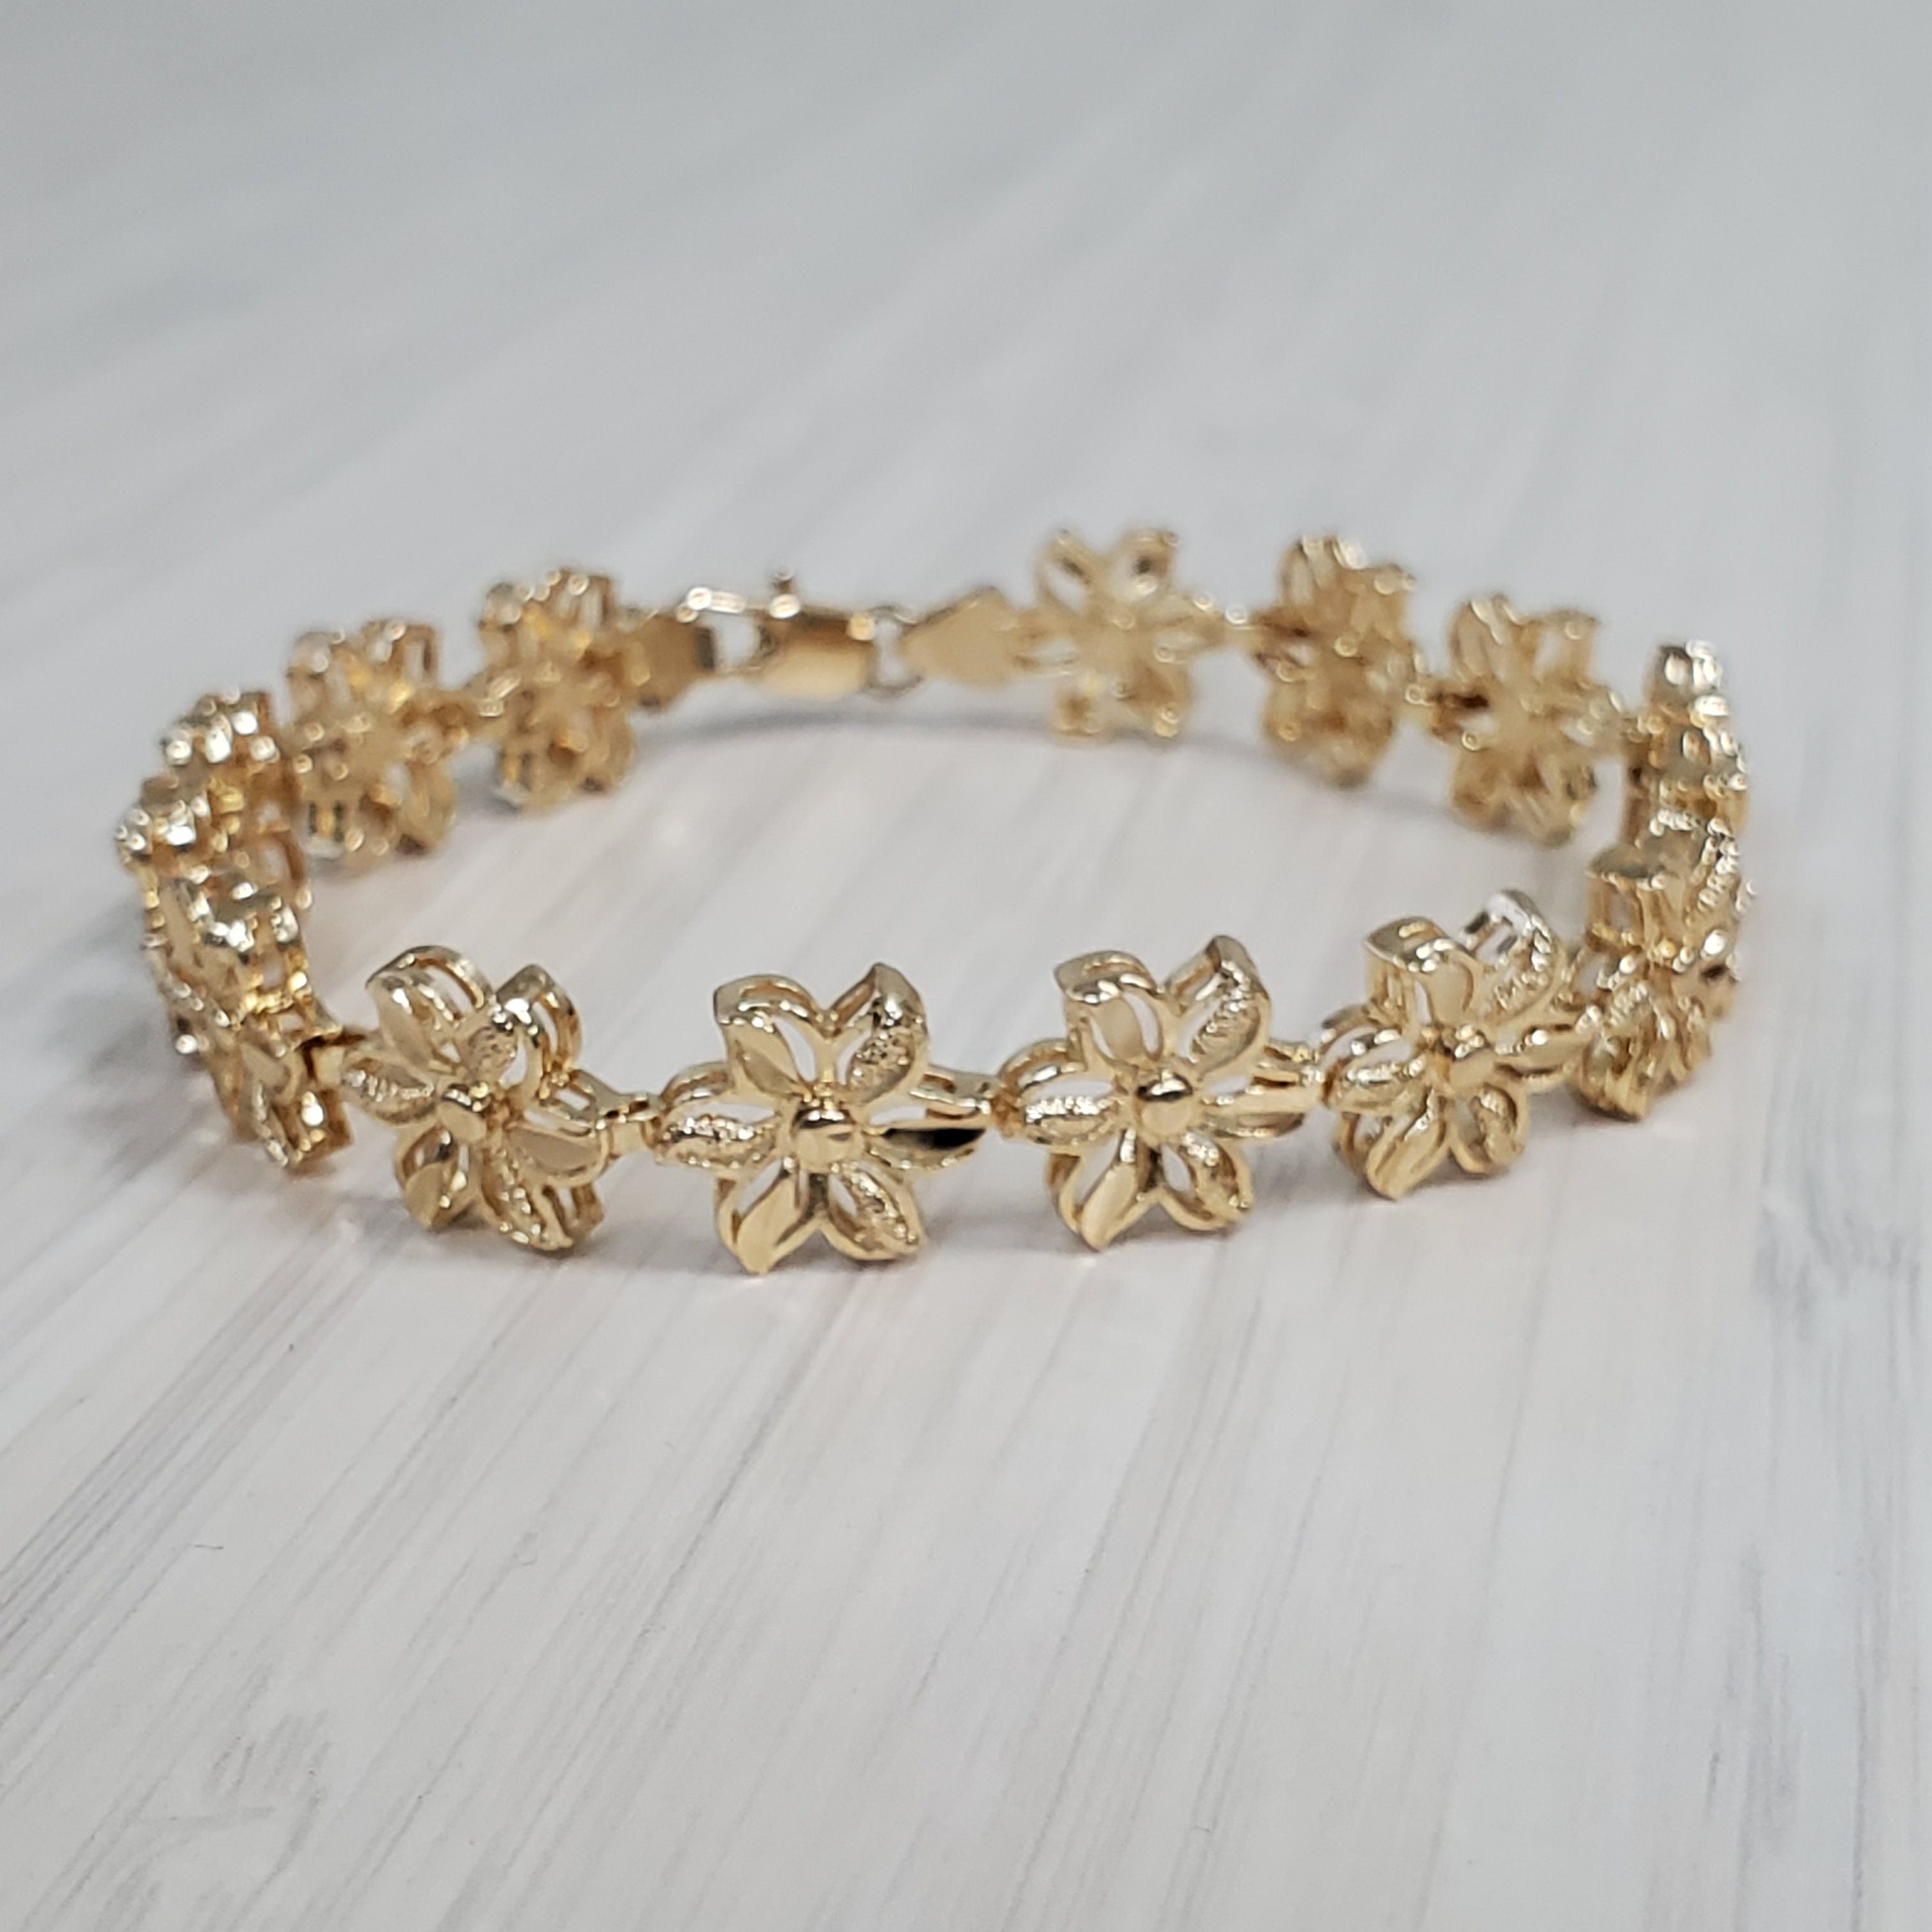 14K Tri-Color Gold, Beverly Hills Gold 7 inch Flower Bracelet. 5.0g | eBay